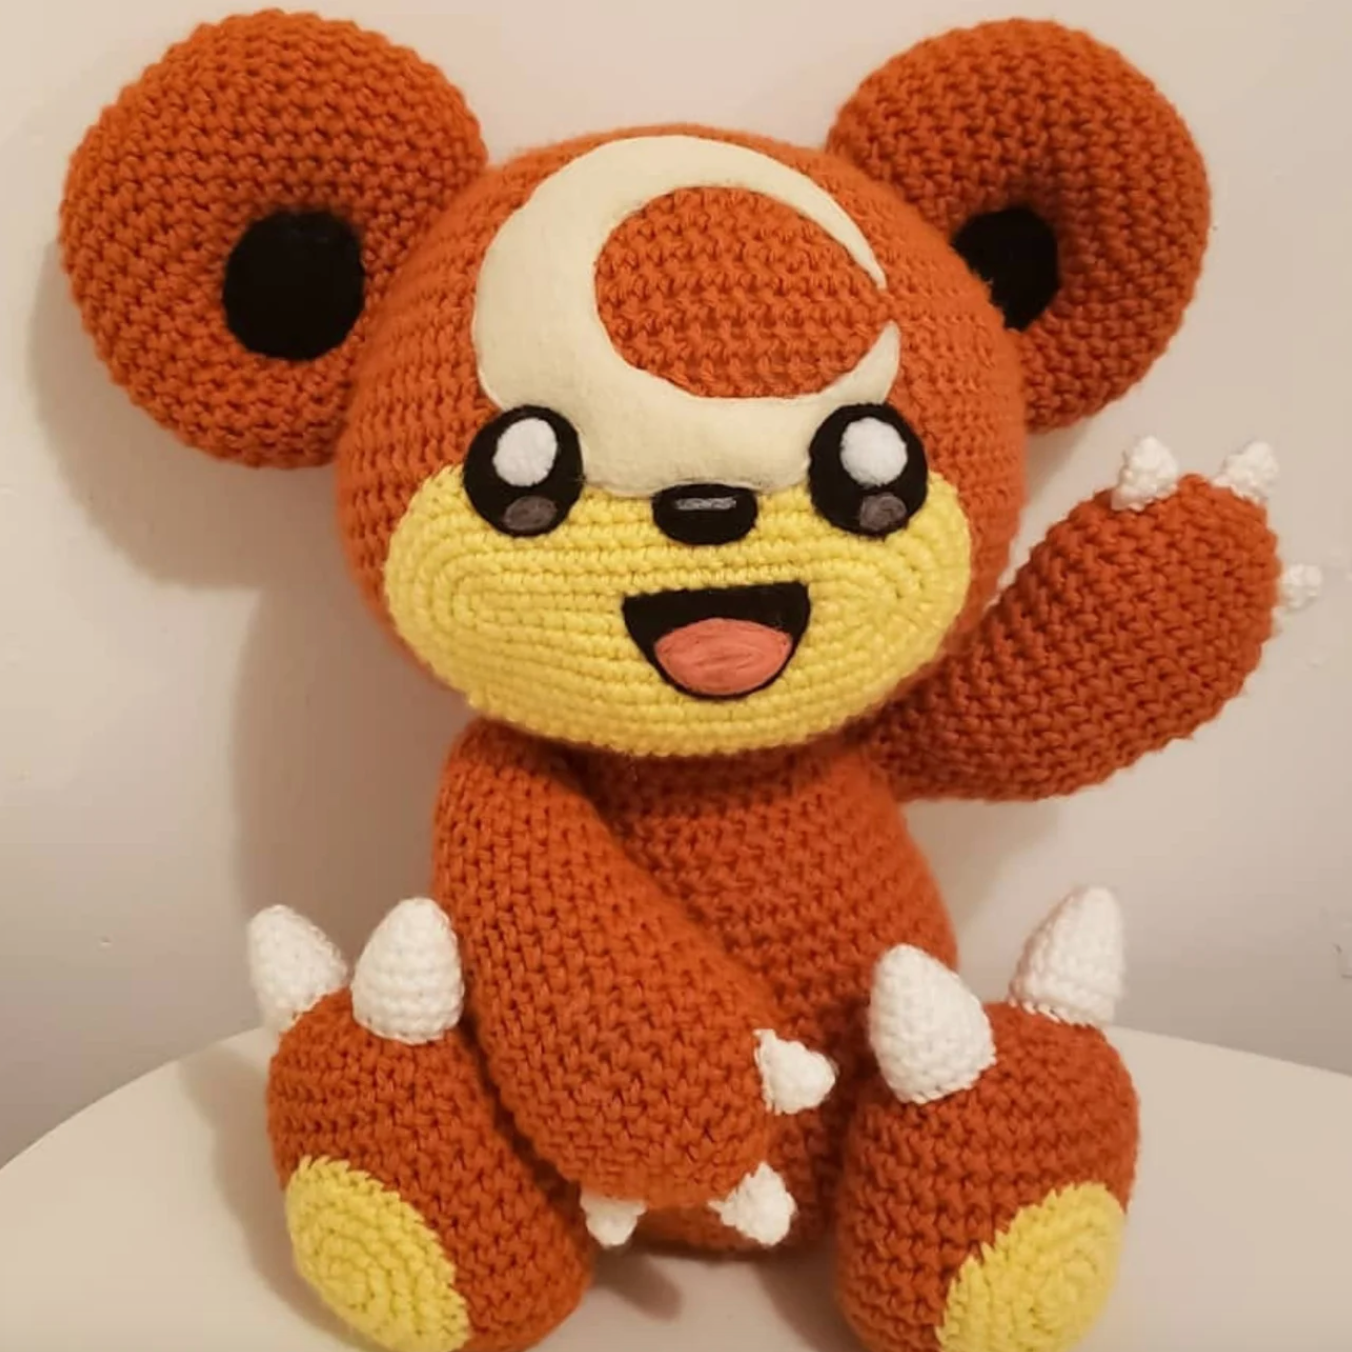 Pokémon Crochet Kit 